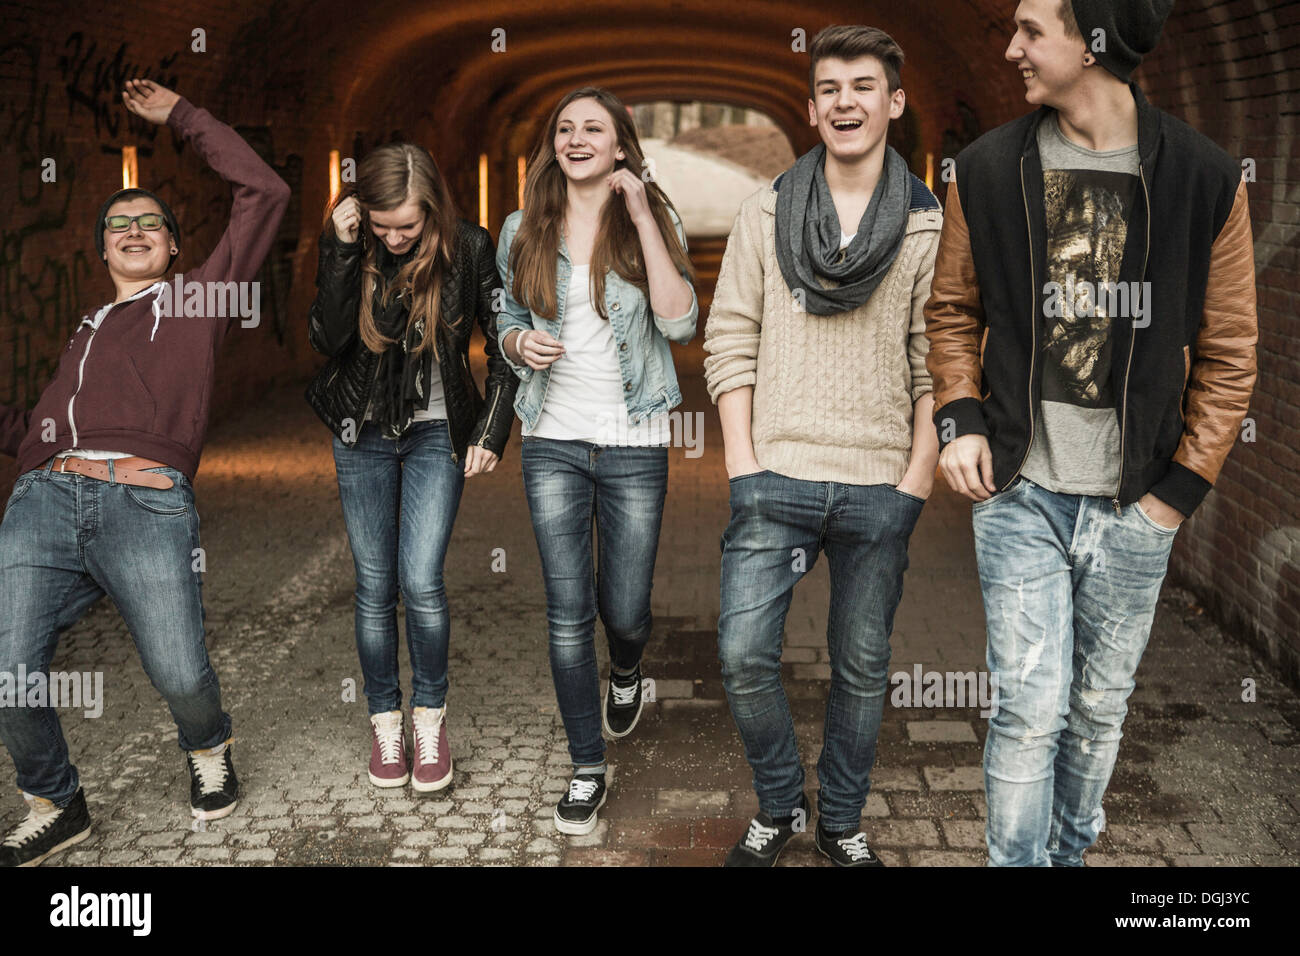 Cinco adolescentes caminar a través del túnel riendo y bromeando Foto de stock